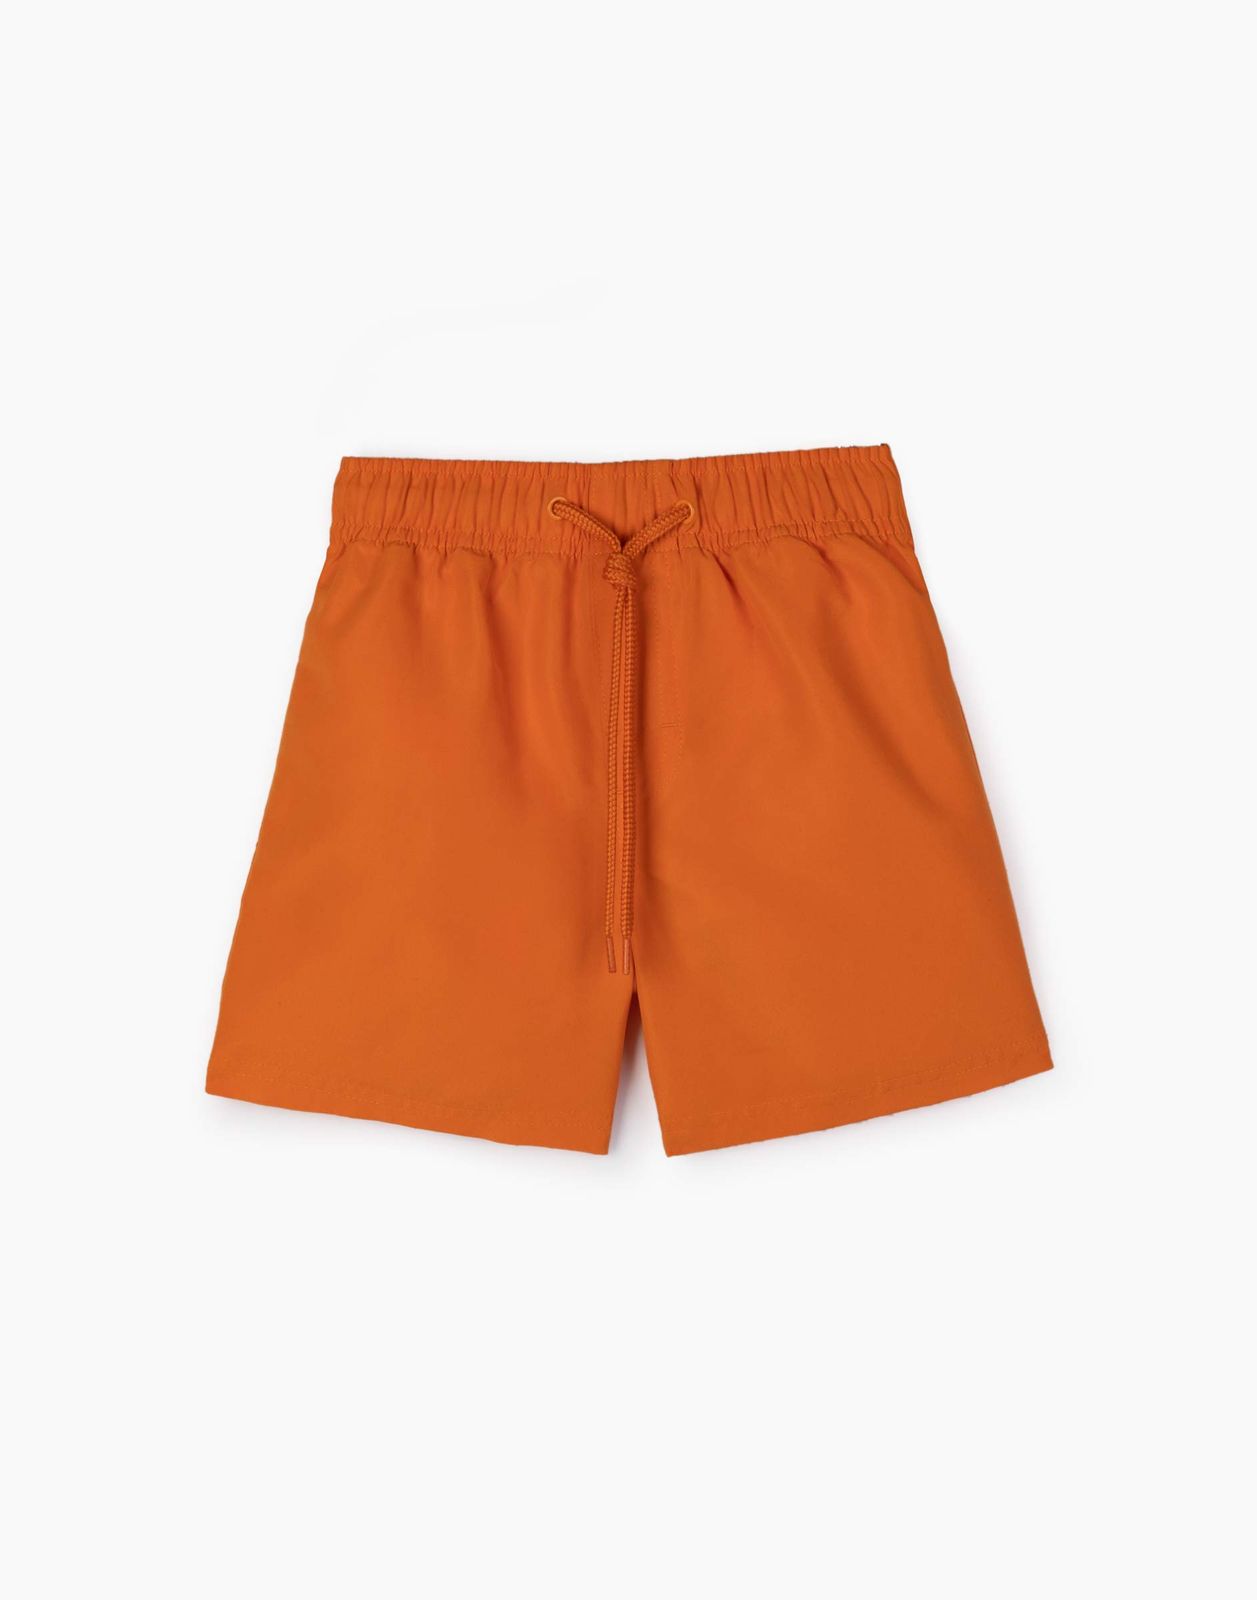 Пляжные шорты для мальчика Gloria Jeans BSM000720 оранжевый 6-8л/128 бейсболка для мальчика minaku оранжевый зеленый р р 52 см